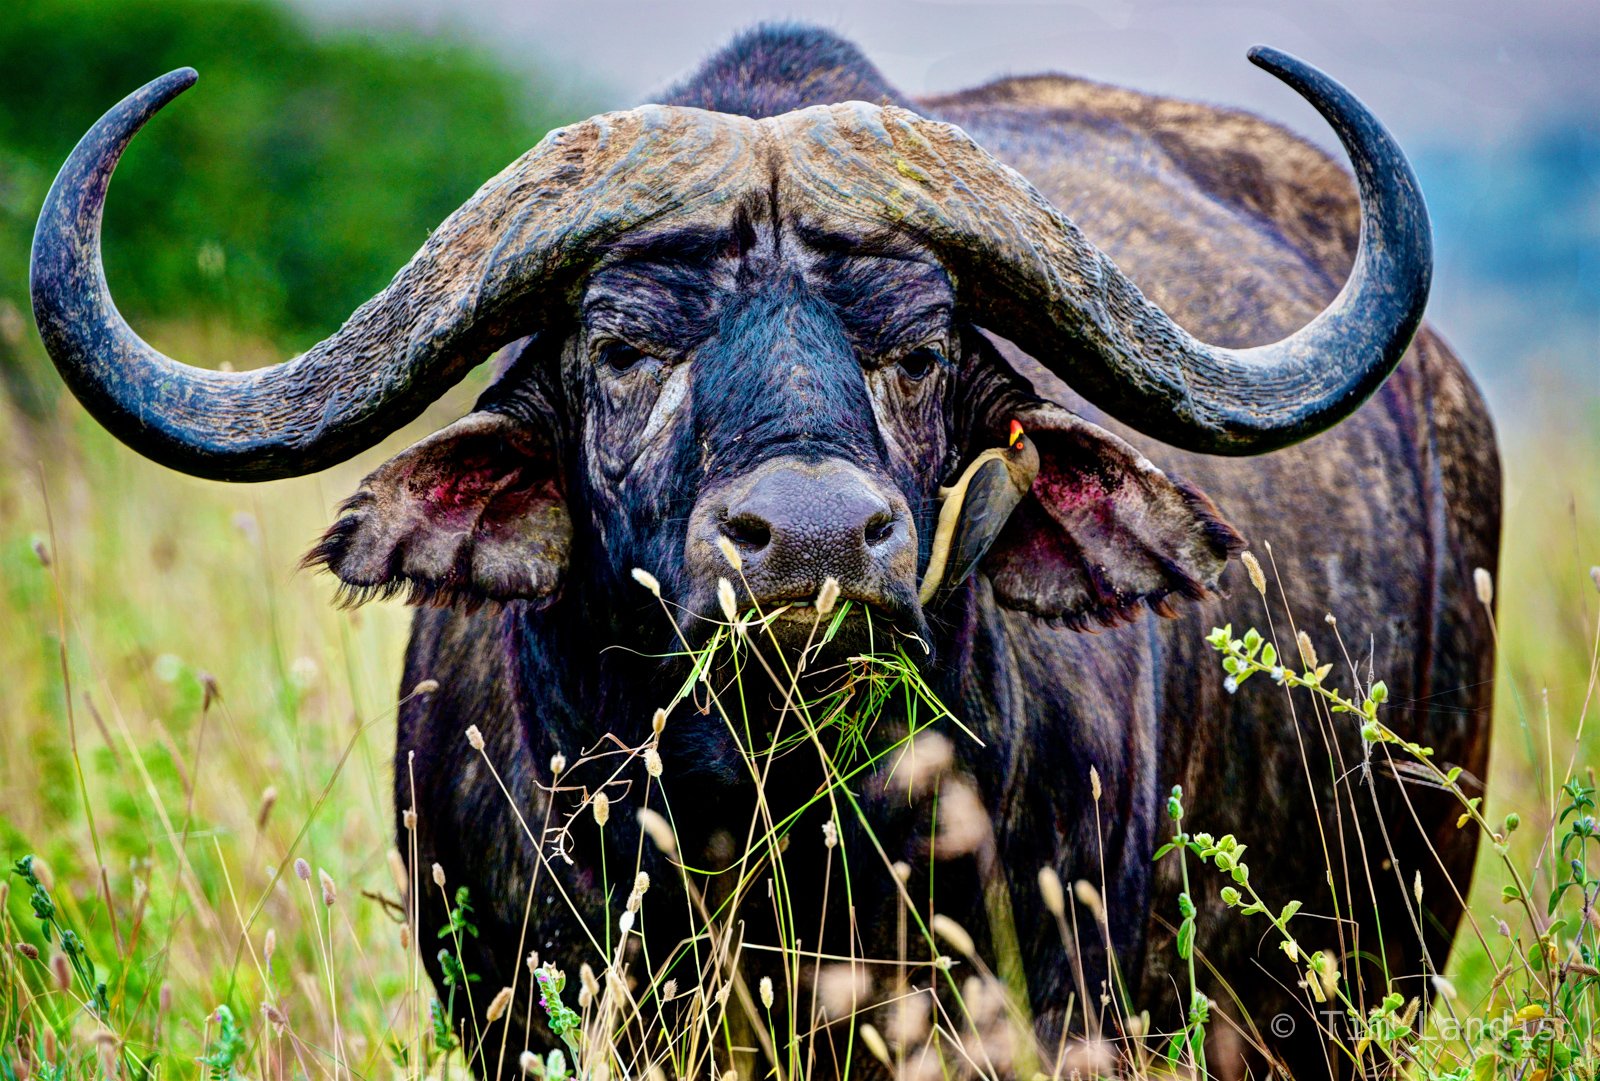 Cape Buffalo,Buffalo with bird, buffalo with Ox pecker, Buffalo portrait, big horns, munching